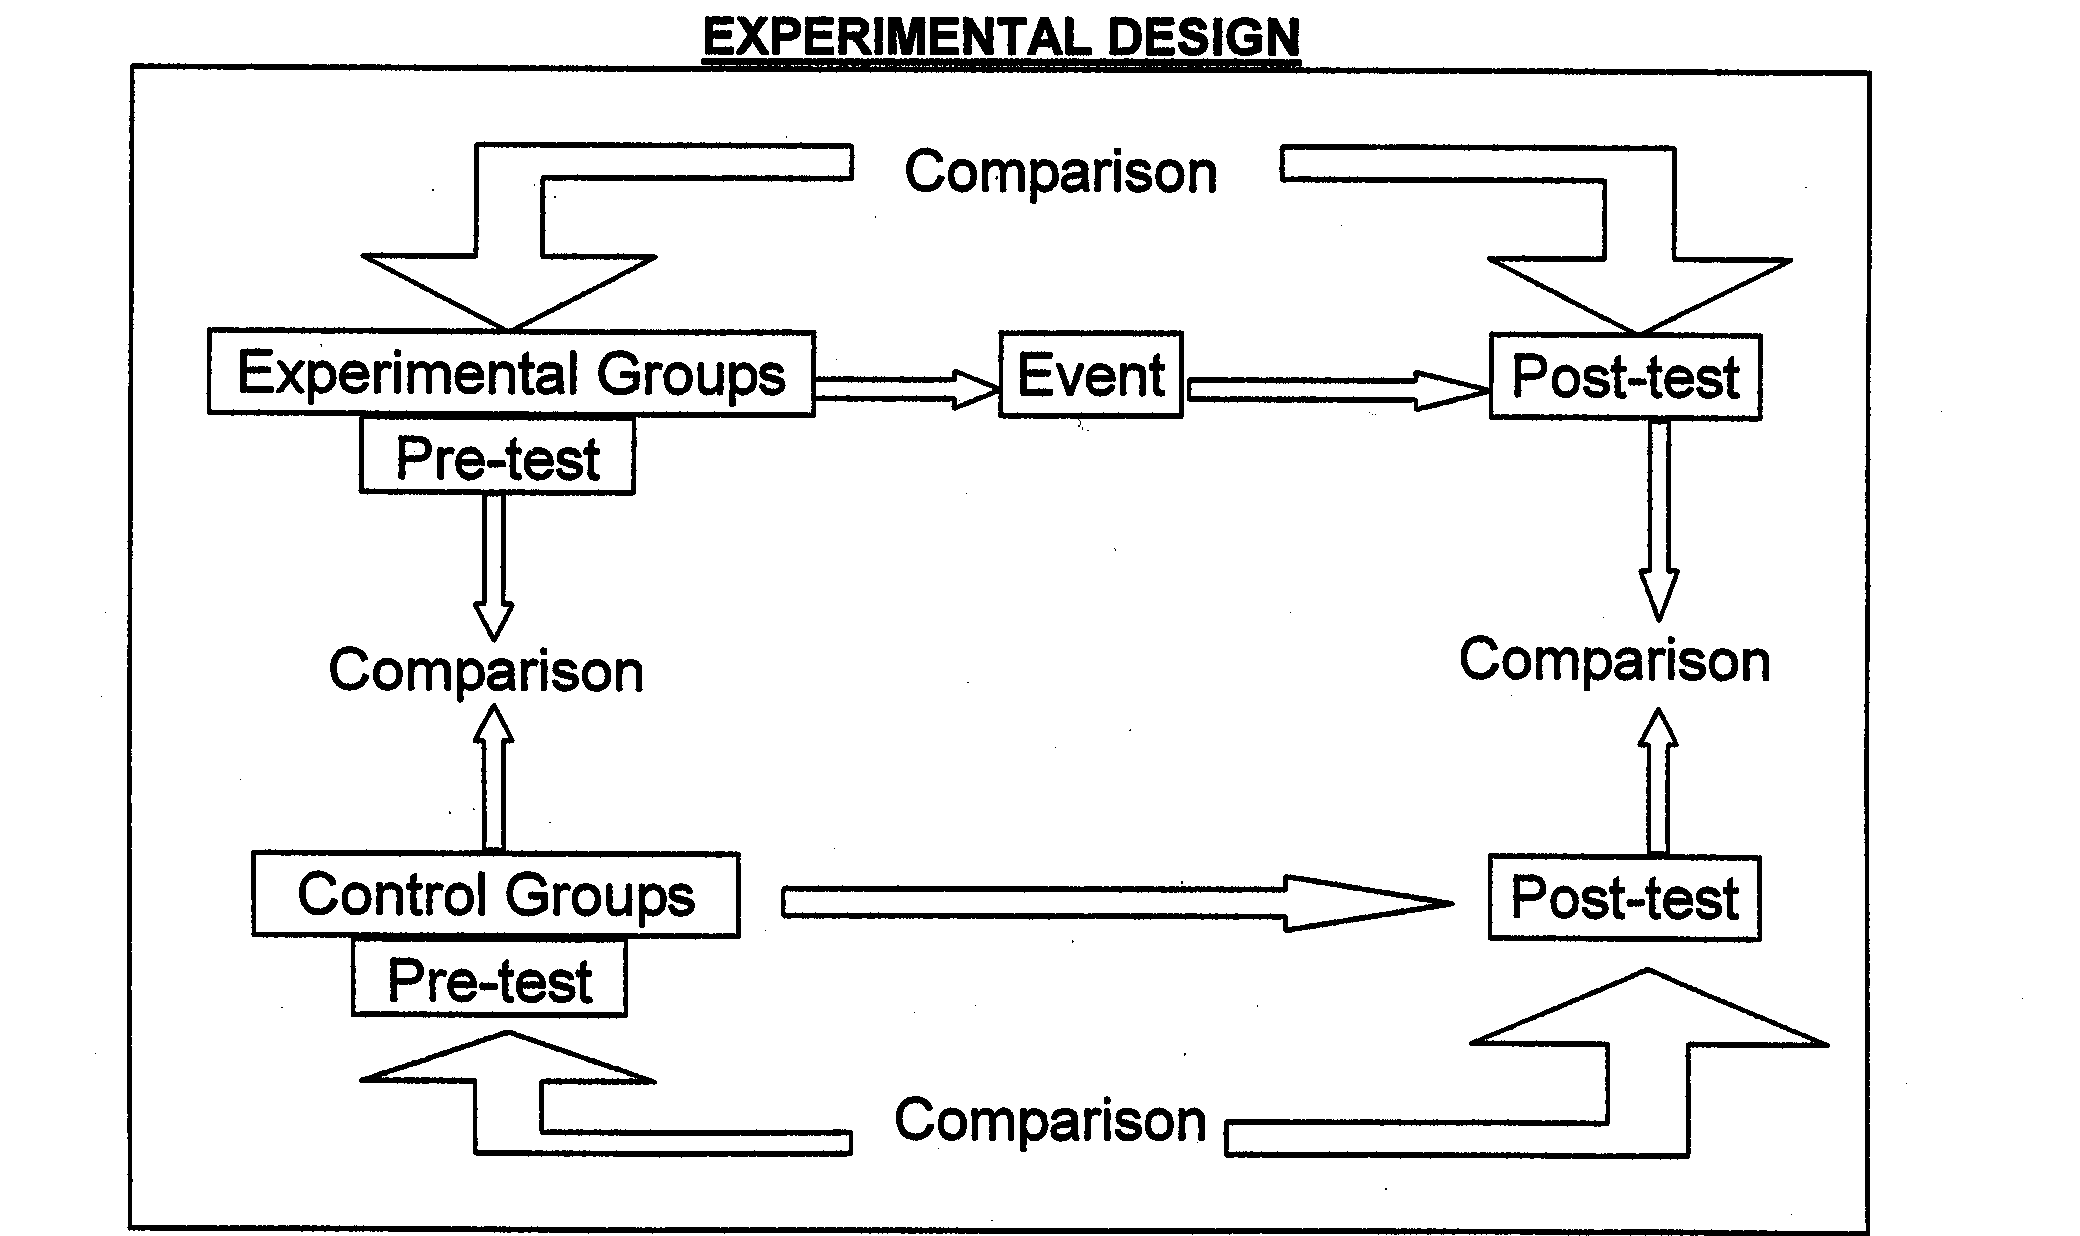 Figure 1 Experimental Design